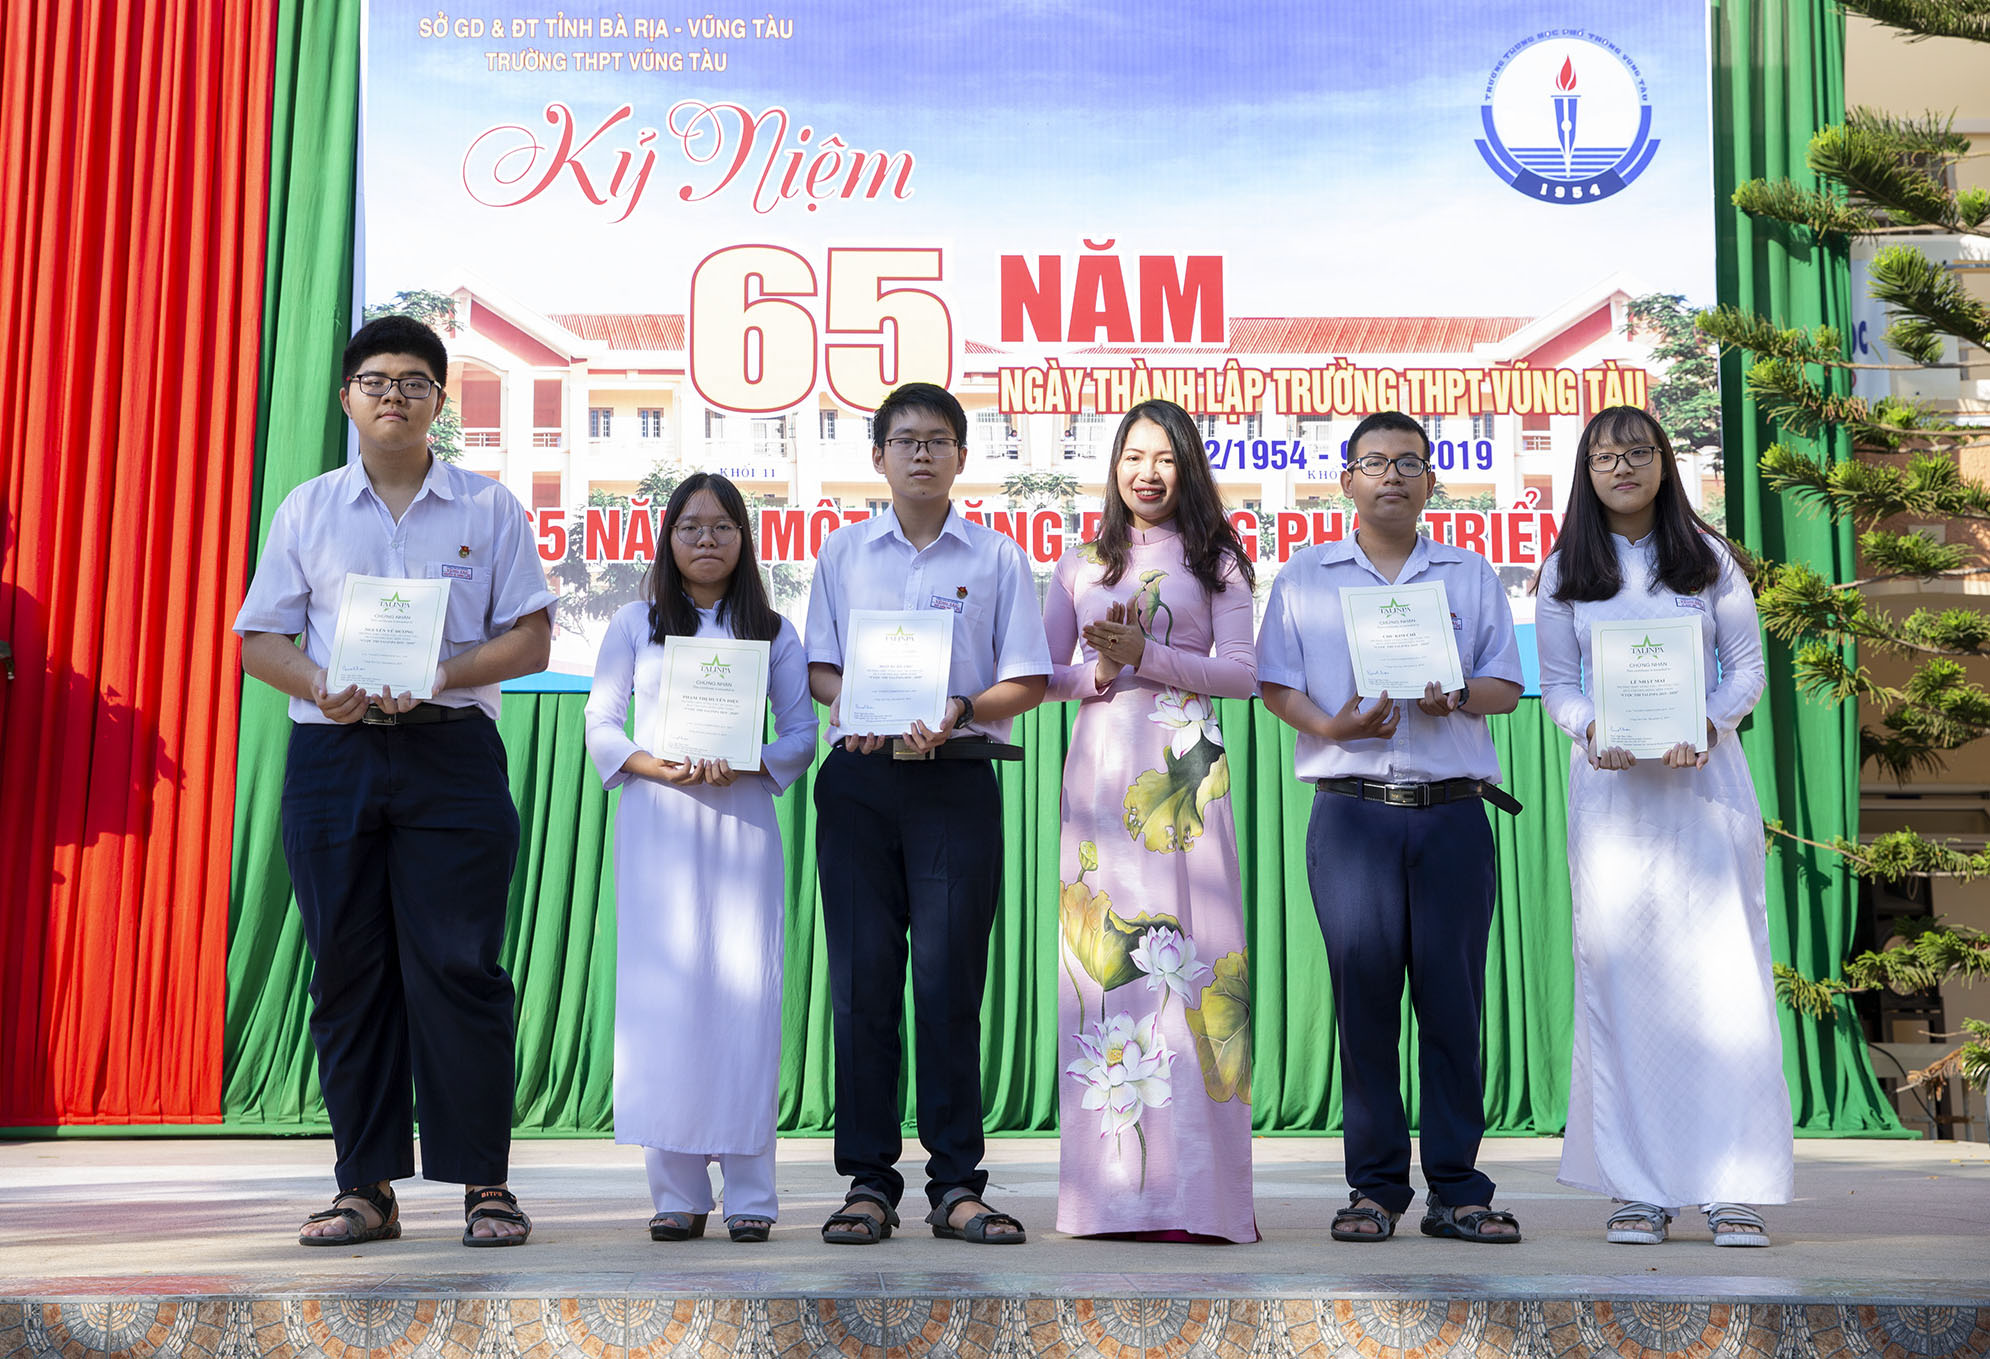 Cô Nguyễn Thị Huế, Bí thư Chi bộ, Hiệu Trường THPT Vũng Tàu trao giấy chứng nhận và khen thưởng các HS đạt thành tích cao trong cuộc thi “Vườn ươm tài năng” năm 2019-2020 do Giáo sư Toán học Ngô Bảo Châu tổ chức.